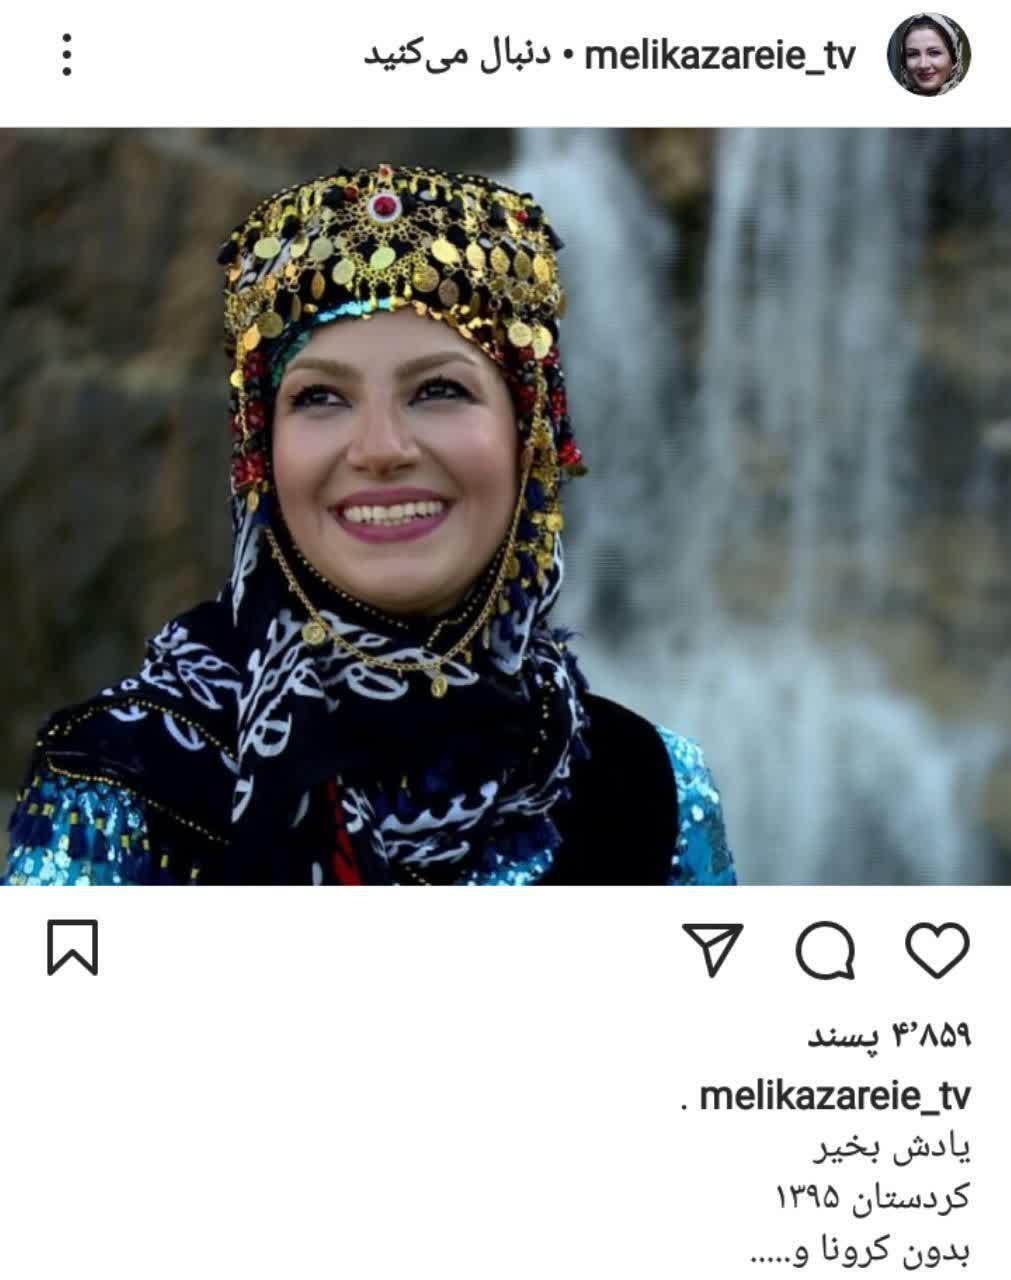 ملیکا زارعی